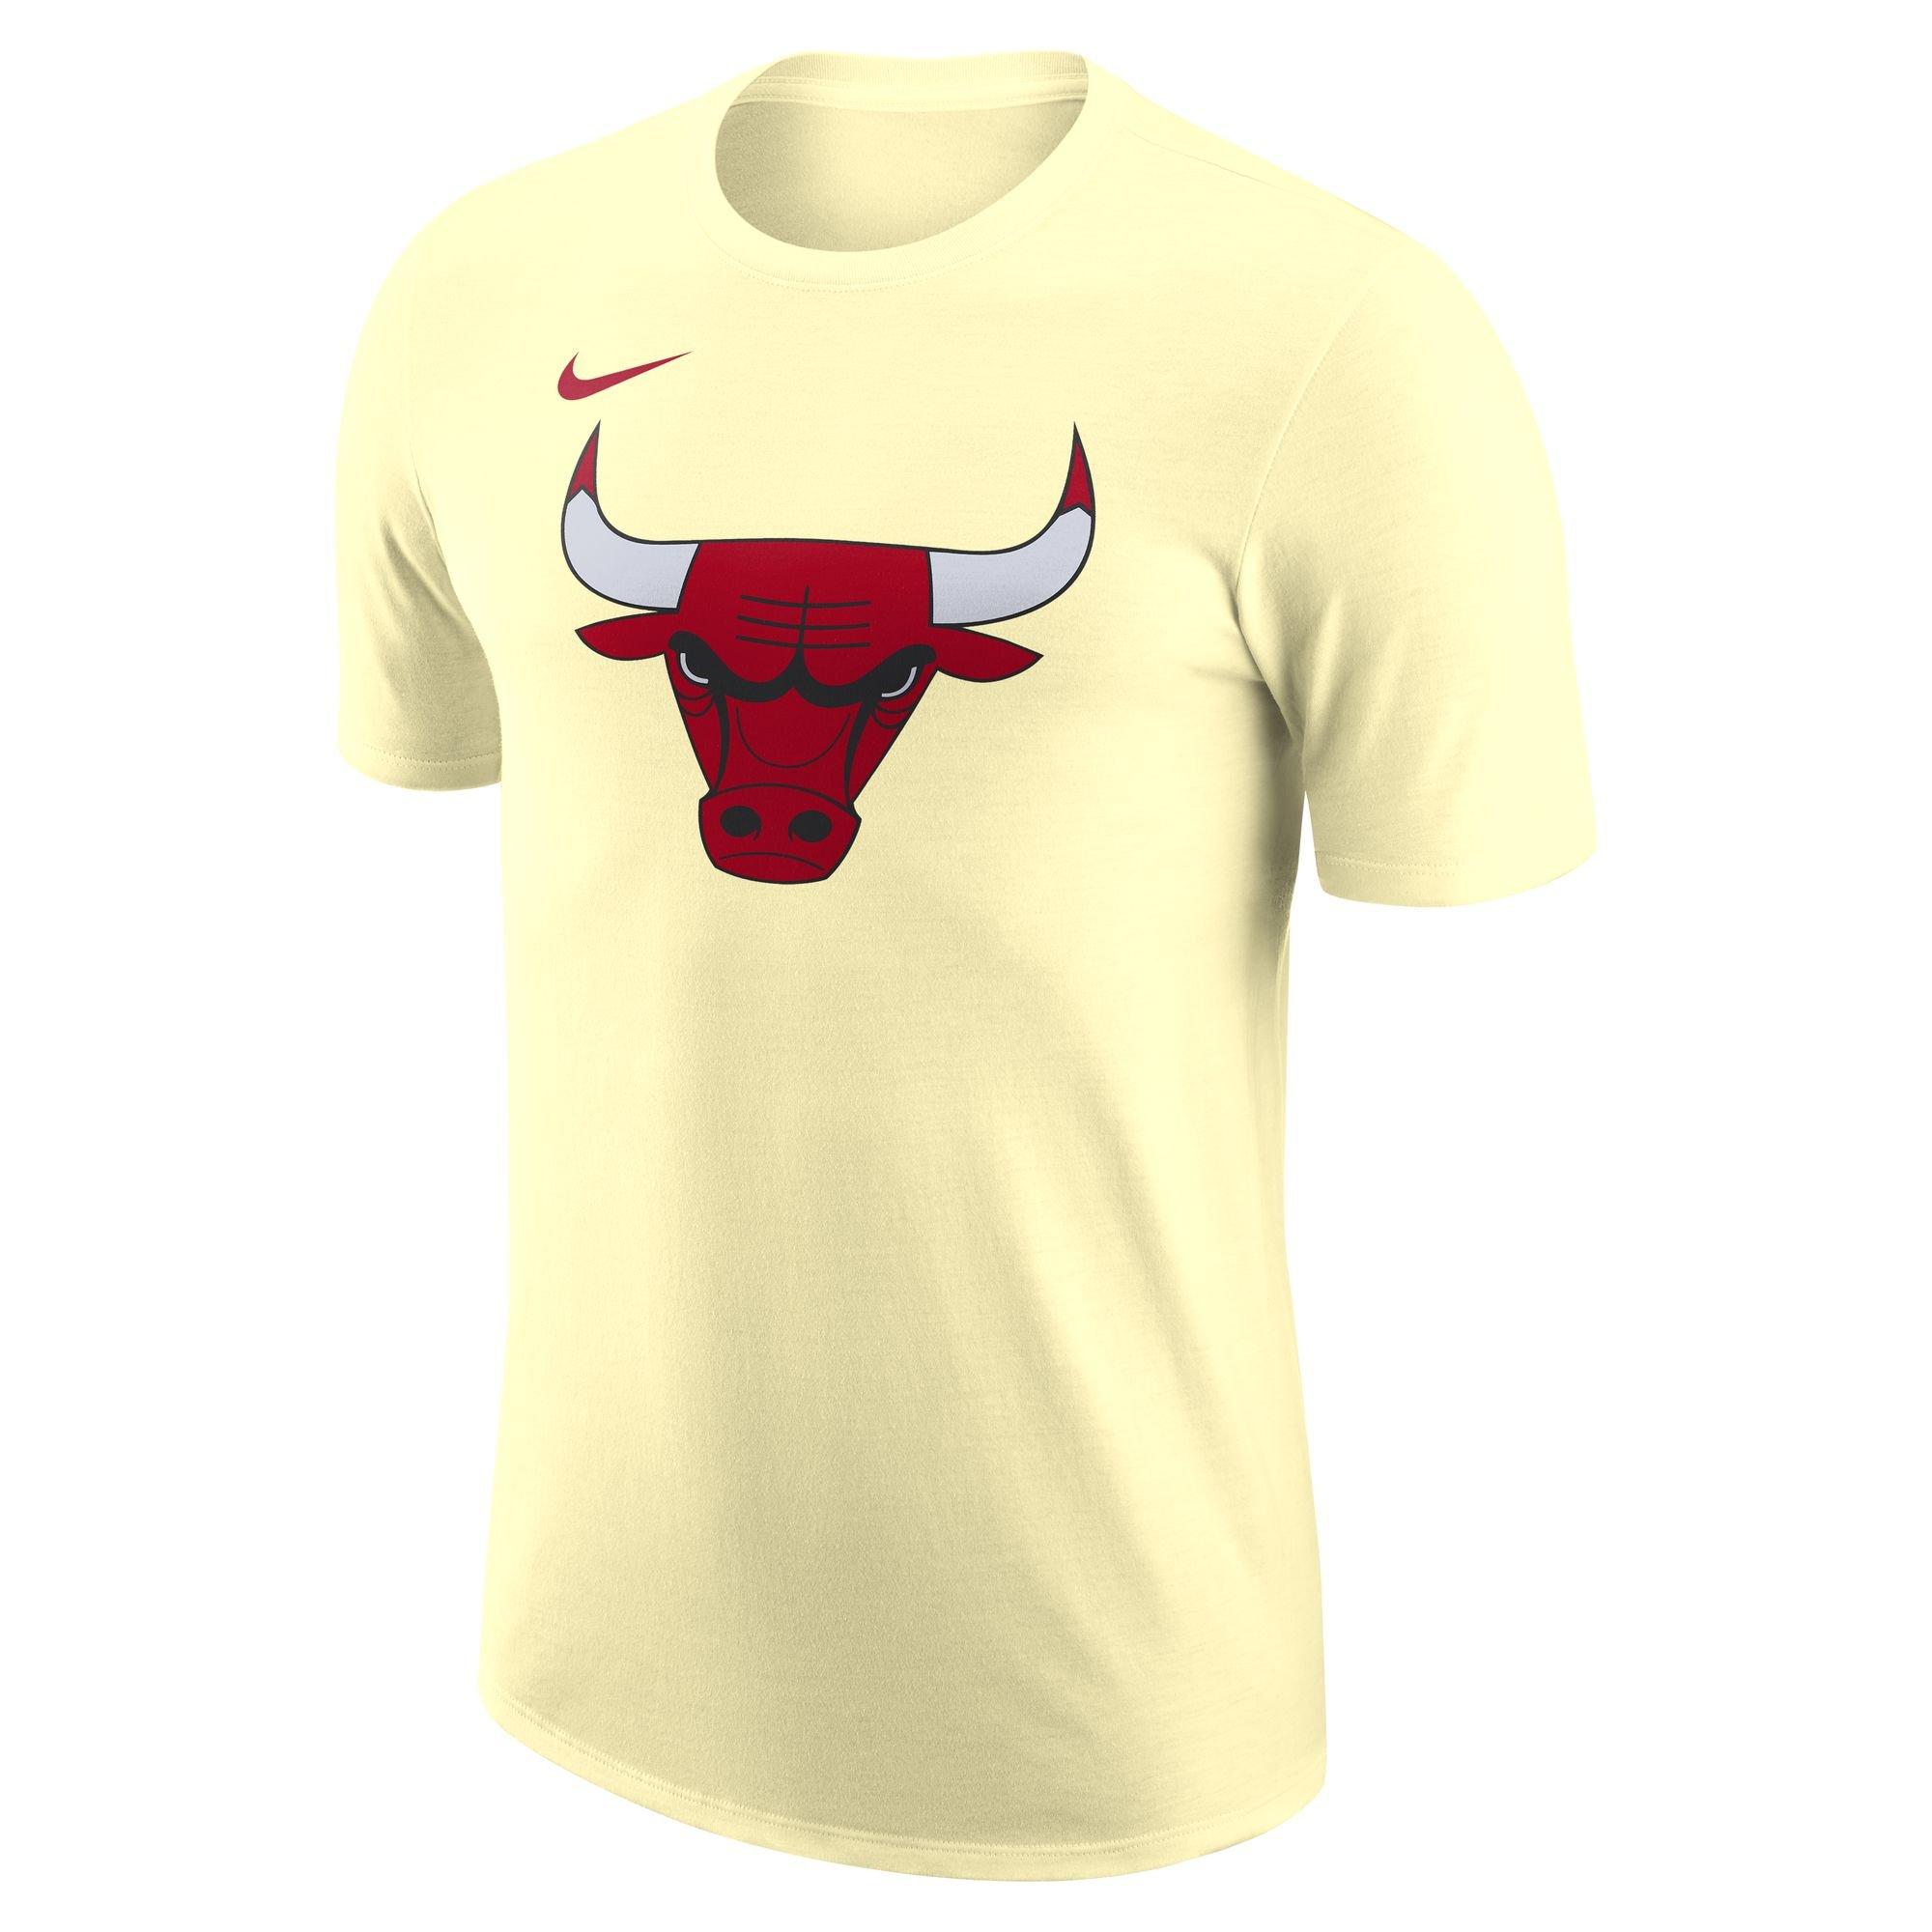 Nike Men's Chicago Bulls Icon Edition Swingman Shorts - Hibbett